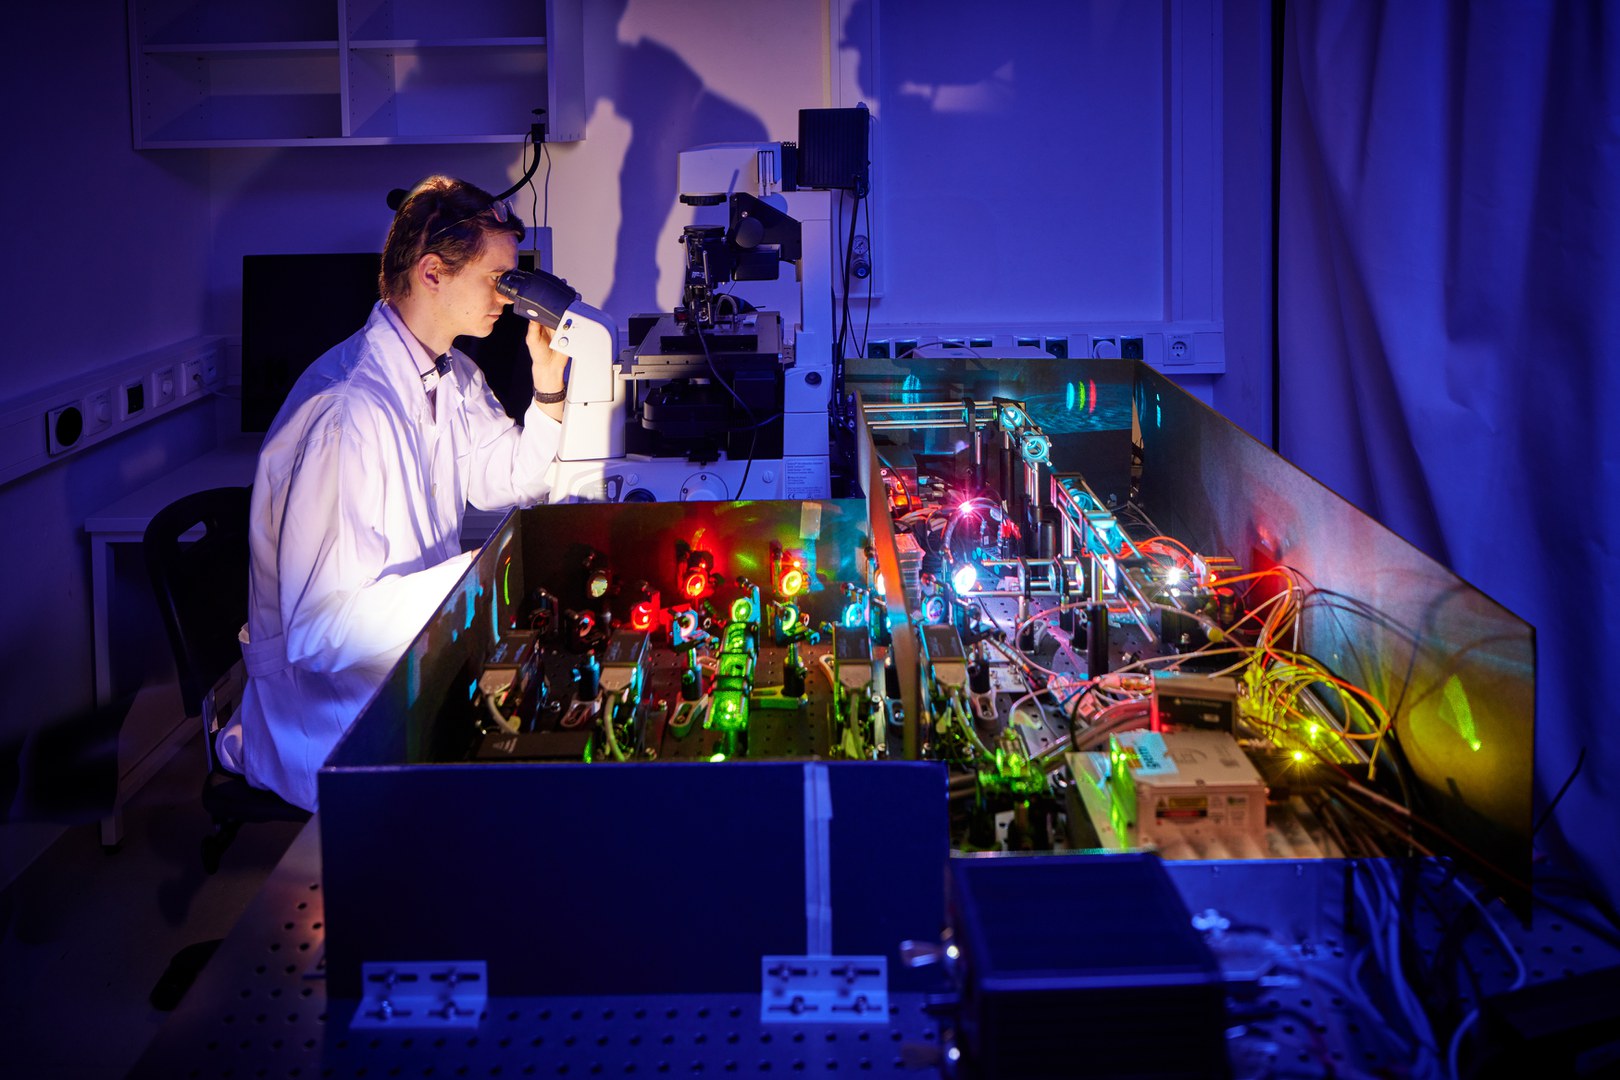 Dr. Koen Martens vom Institut für Mikrobiologie und Biotechnologie der Universität Bonn am speziell angefertigten superauflösenden Fluoreszenzmikroskop, mit dem er seine Untersuchungen durchführt.